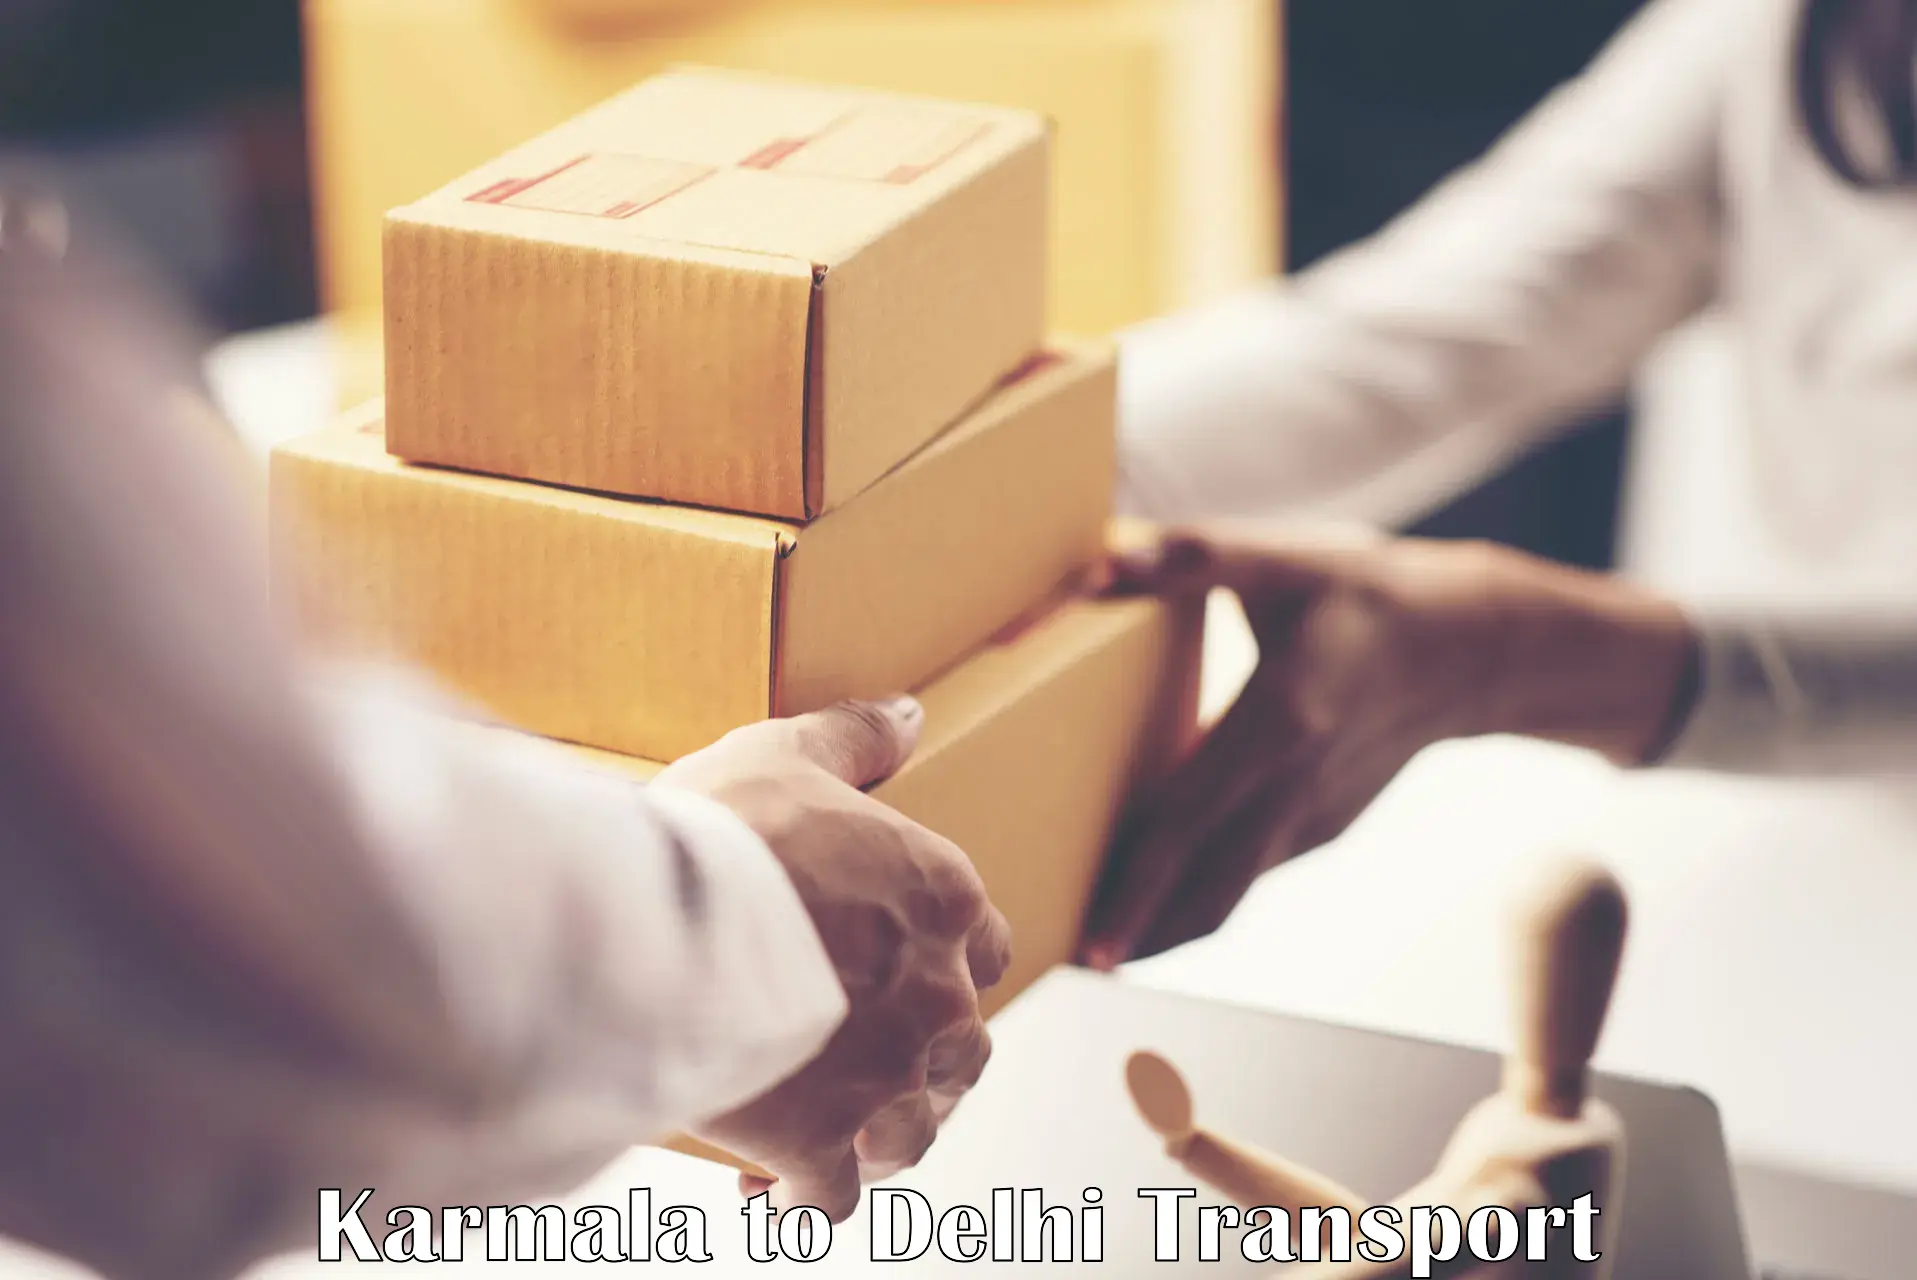 Online transport service Karmala to East Delhi